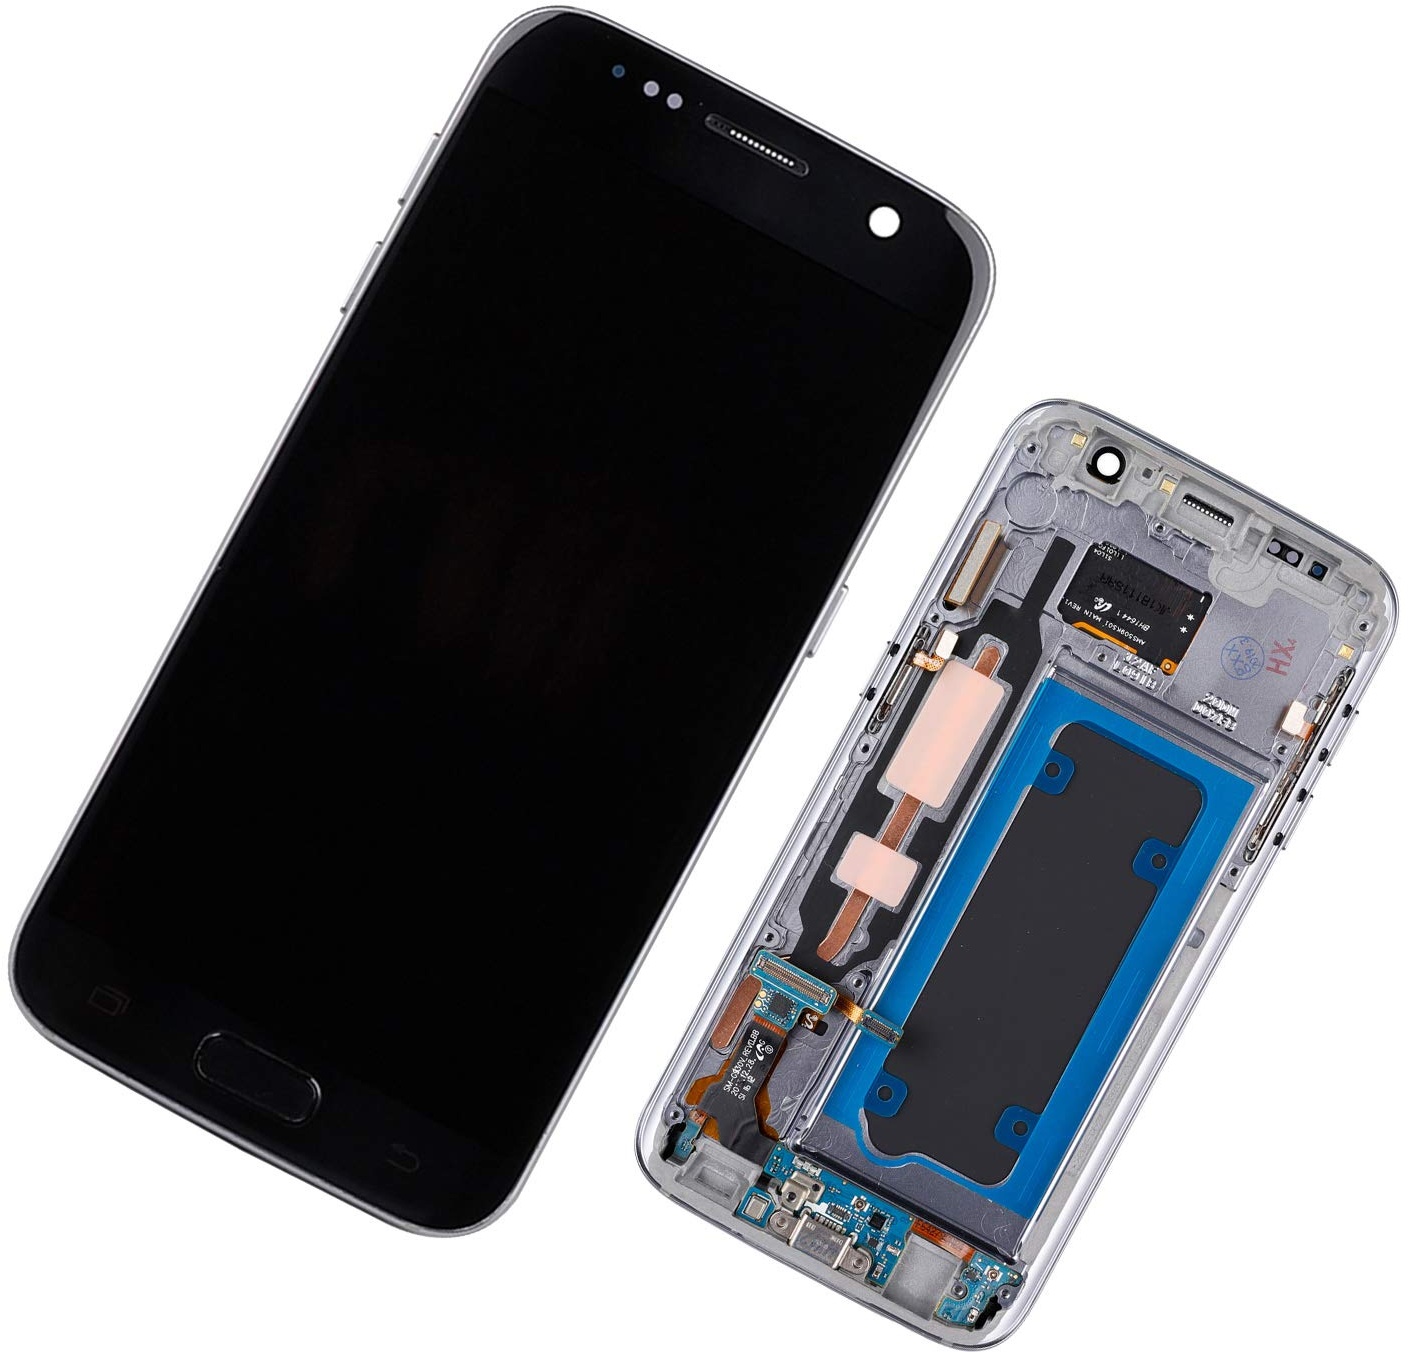 Duotipa Super AMOLED Display Kompatibel mit Samsung Galaxy S7 SM-G930F SM-G930A 5.1 inch LCD Display Bildschirm Digitizer Ersatzdisplay Assembly mit Rahmen + Werkzeugen(Schwarz)